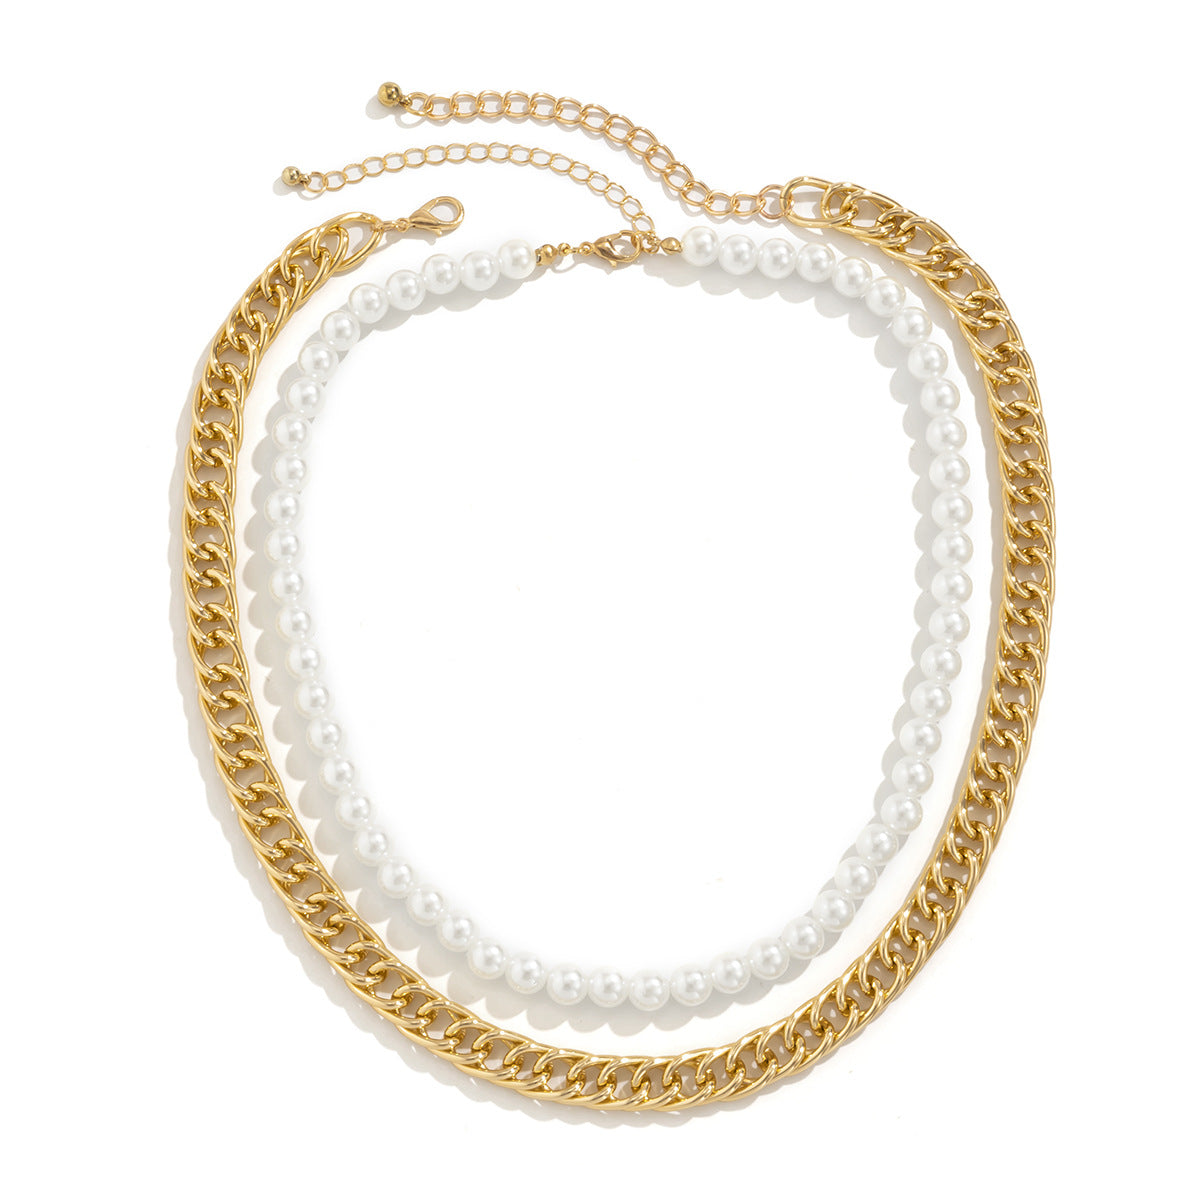 Hip Hop Style Chain Desgin Necklaces for Women